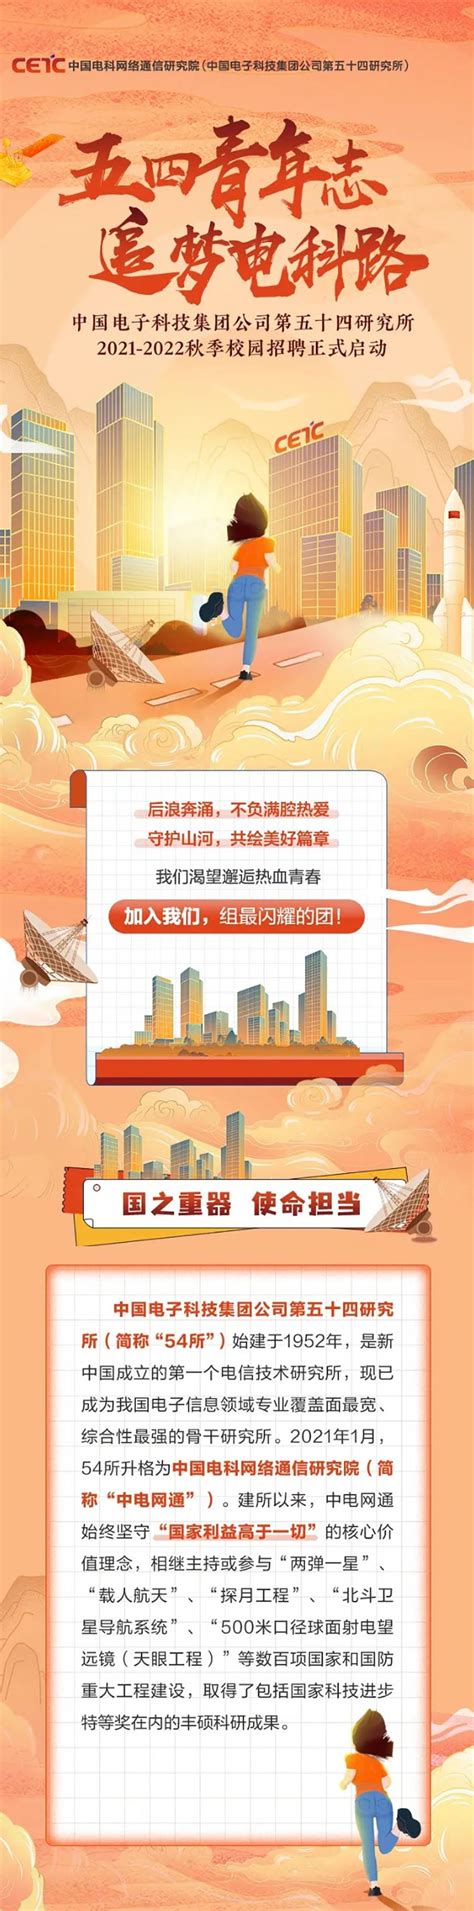 中国电科54所2021年度招聘简章-信息来源于中研博硕英才网-高层次人才门户